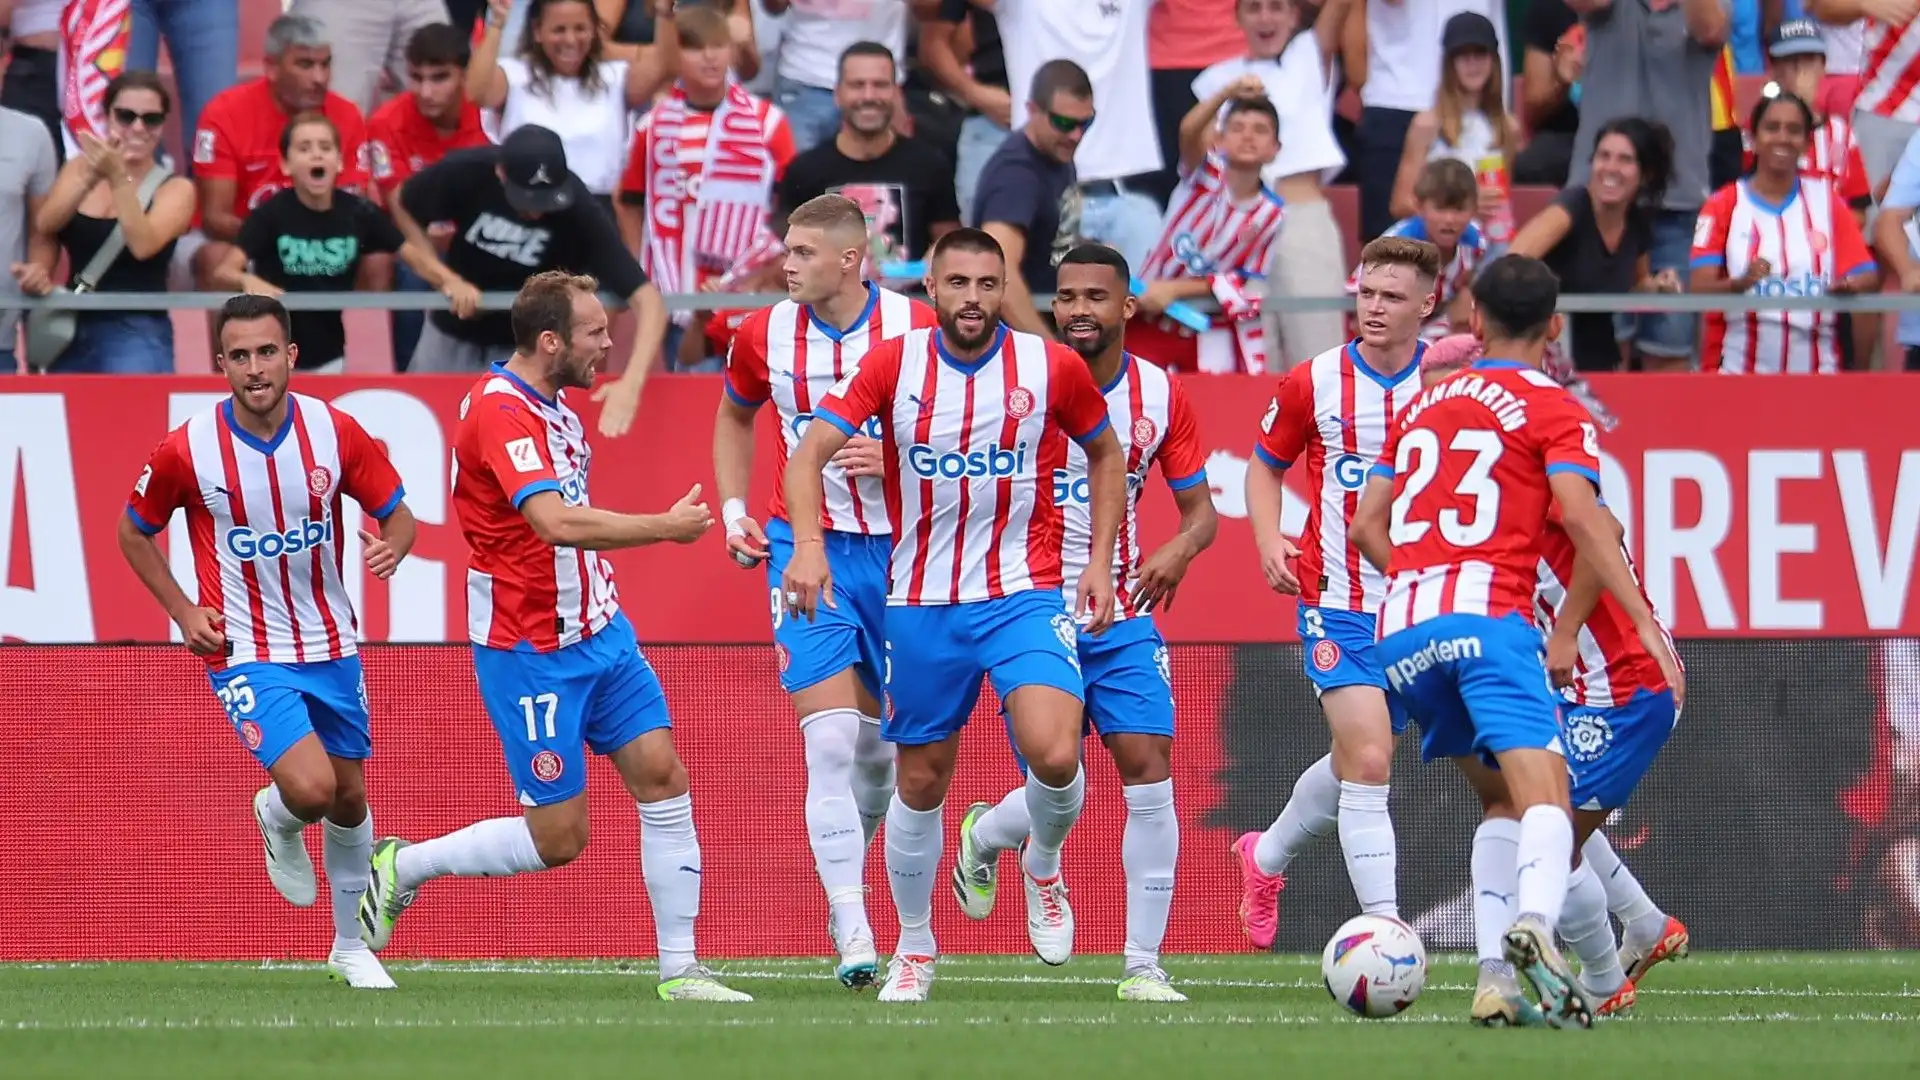 Nello scorso turno il Girona ha vinto 4-2 contro l'Osasuna in trasferta